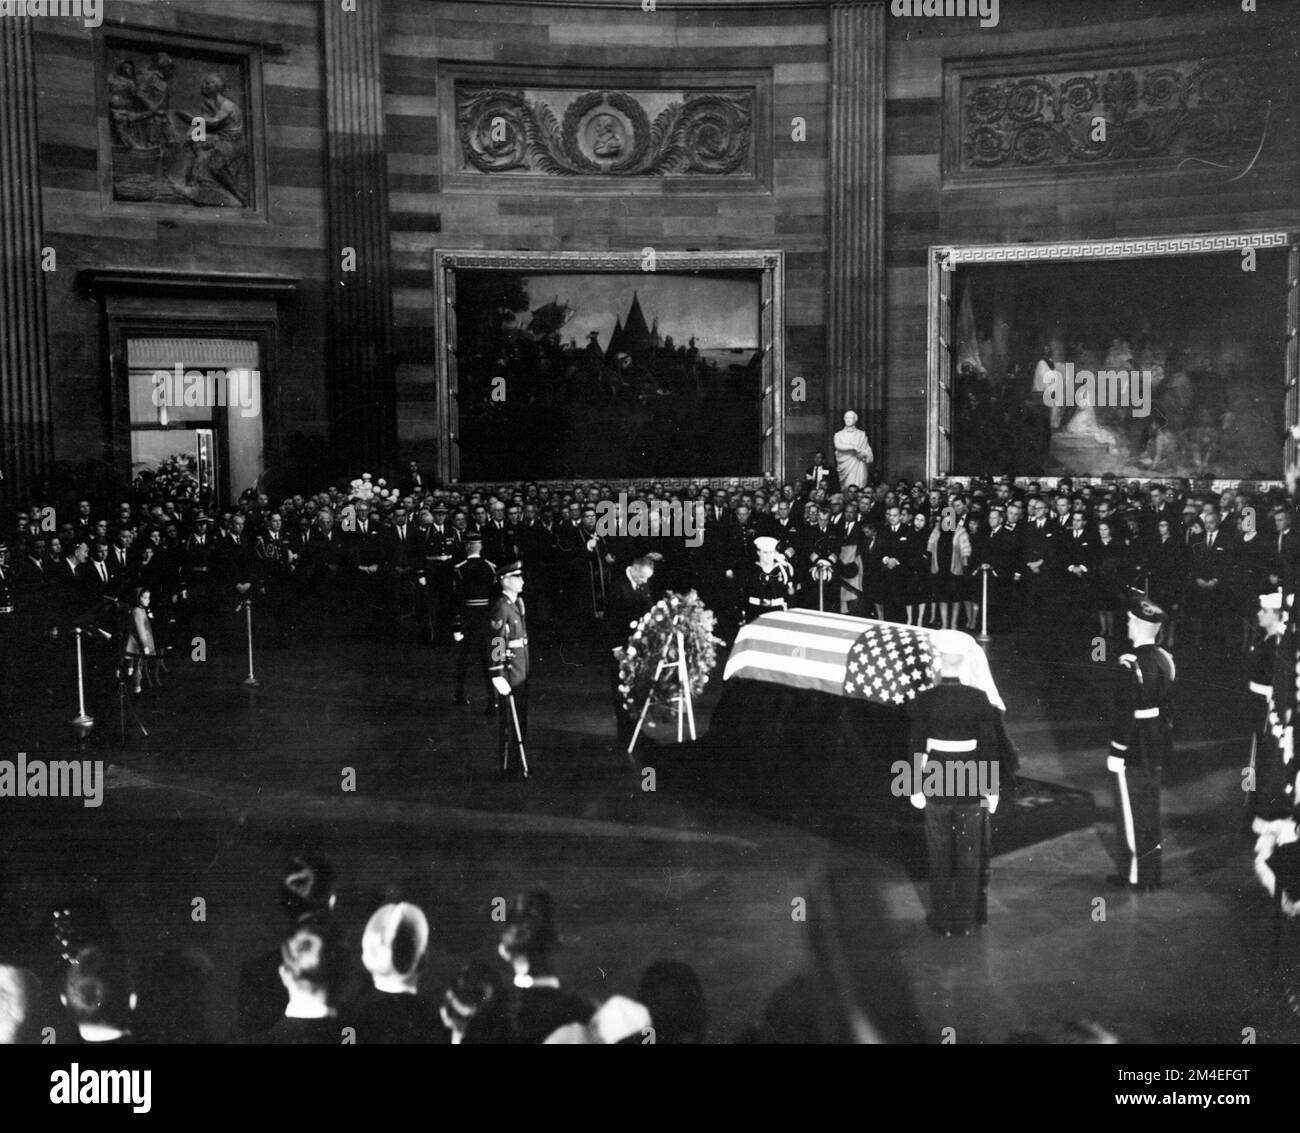 Le président Lyndon B. Johnson a déposé une couronne devant le cercueil couvert de drapeaux du président Kennedy, lors des funérailles tenues dans la rotonde du Capitole des États-Unis, à 24 novembre 1963. Banque D'Images